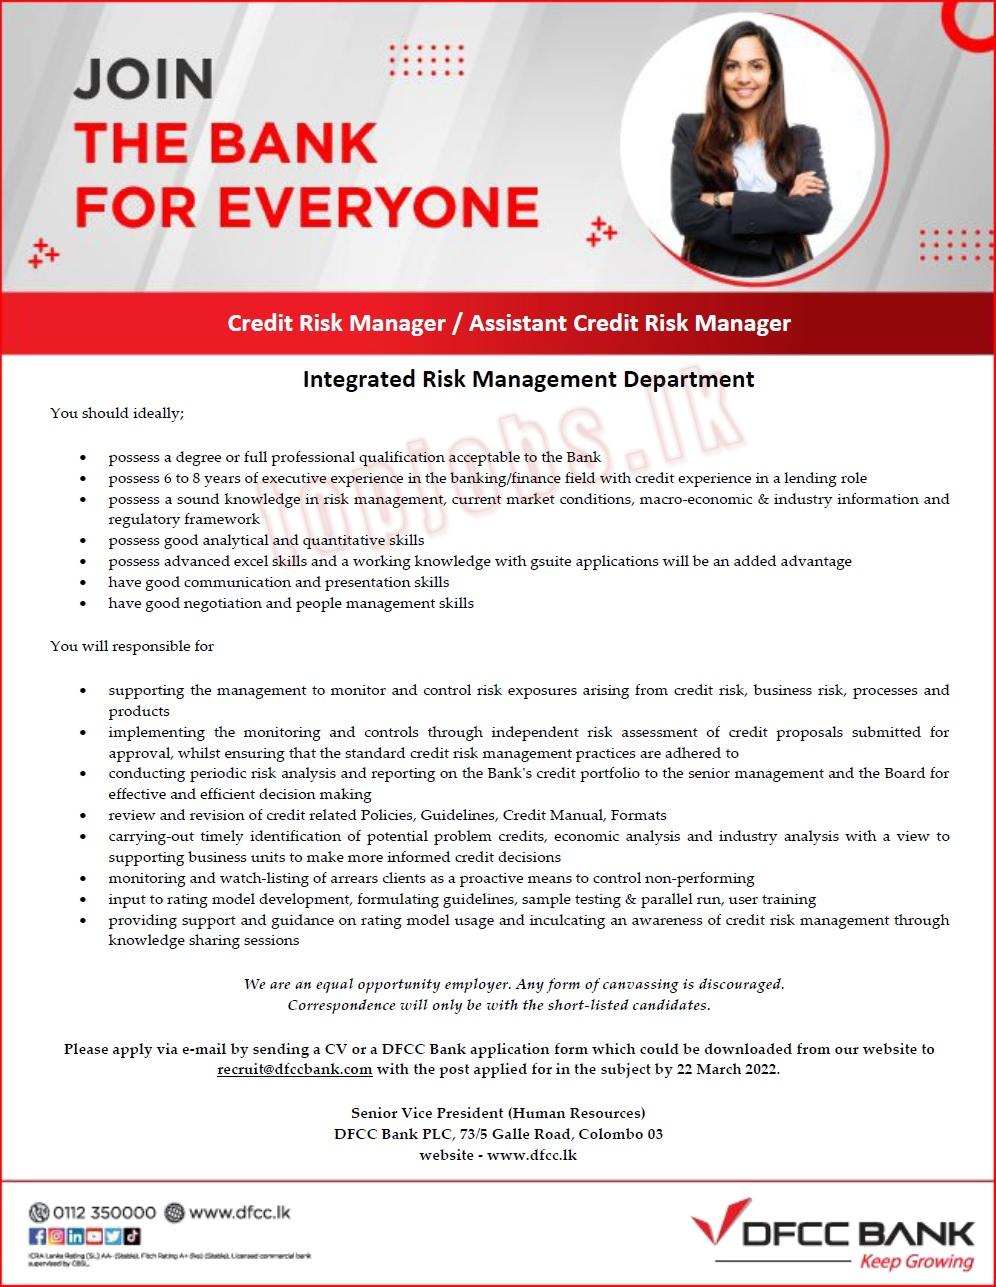 Credit Risk Manager / Assistant Credit Risk Manager - DFCC Bank